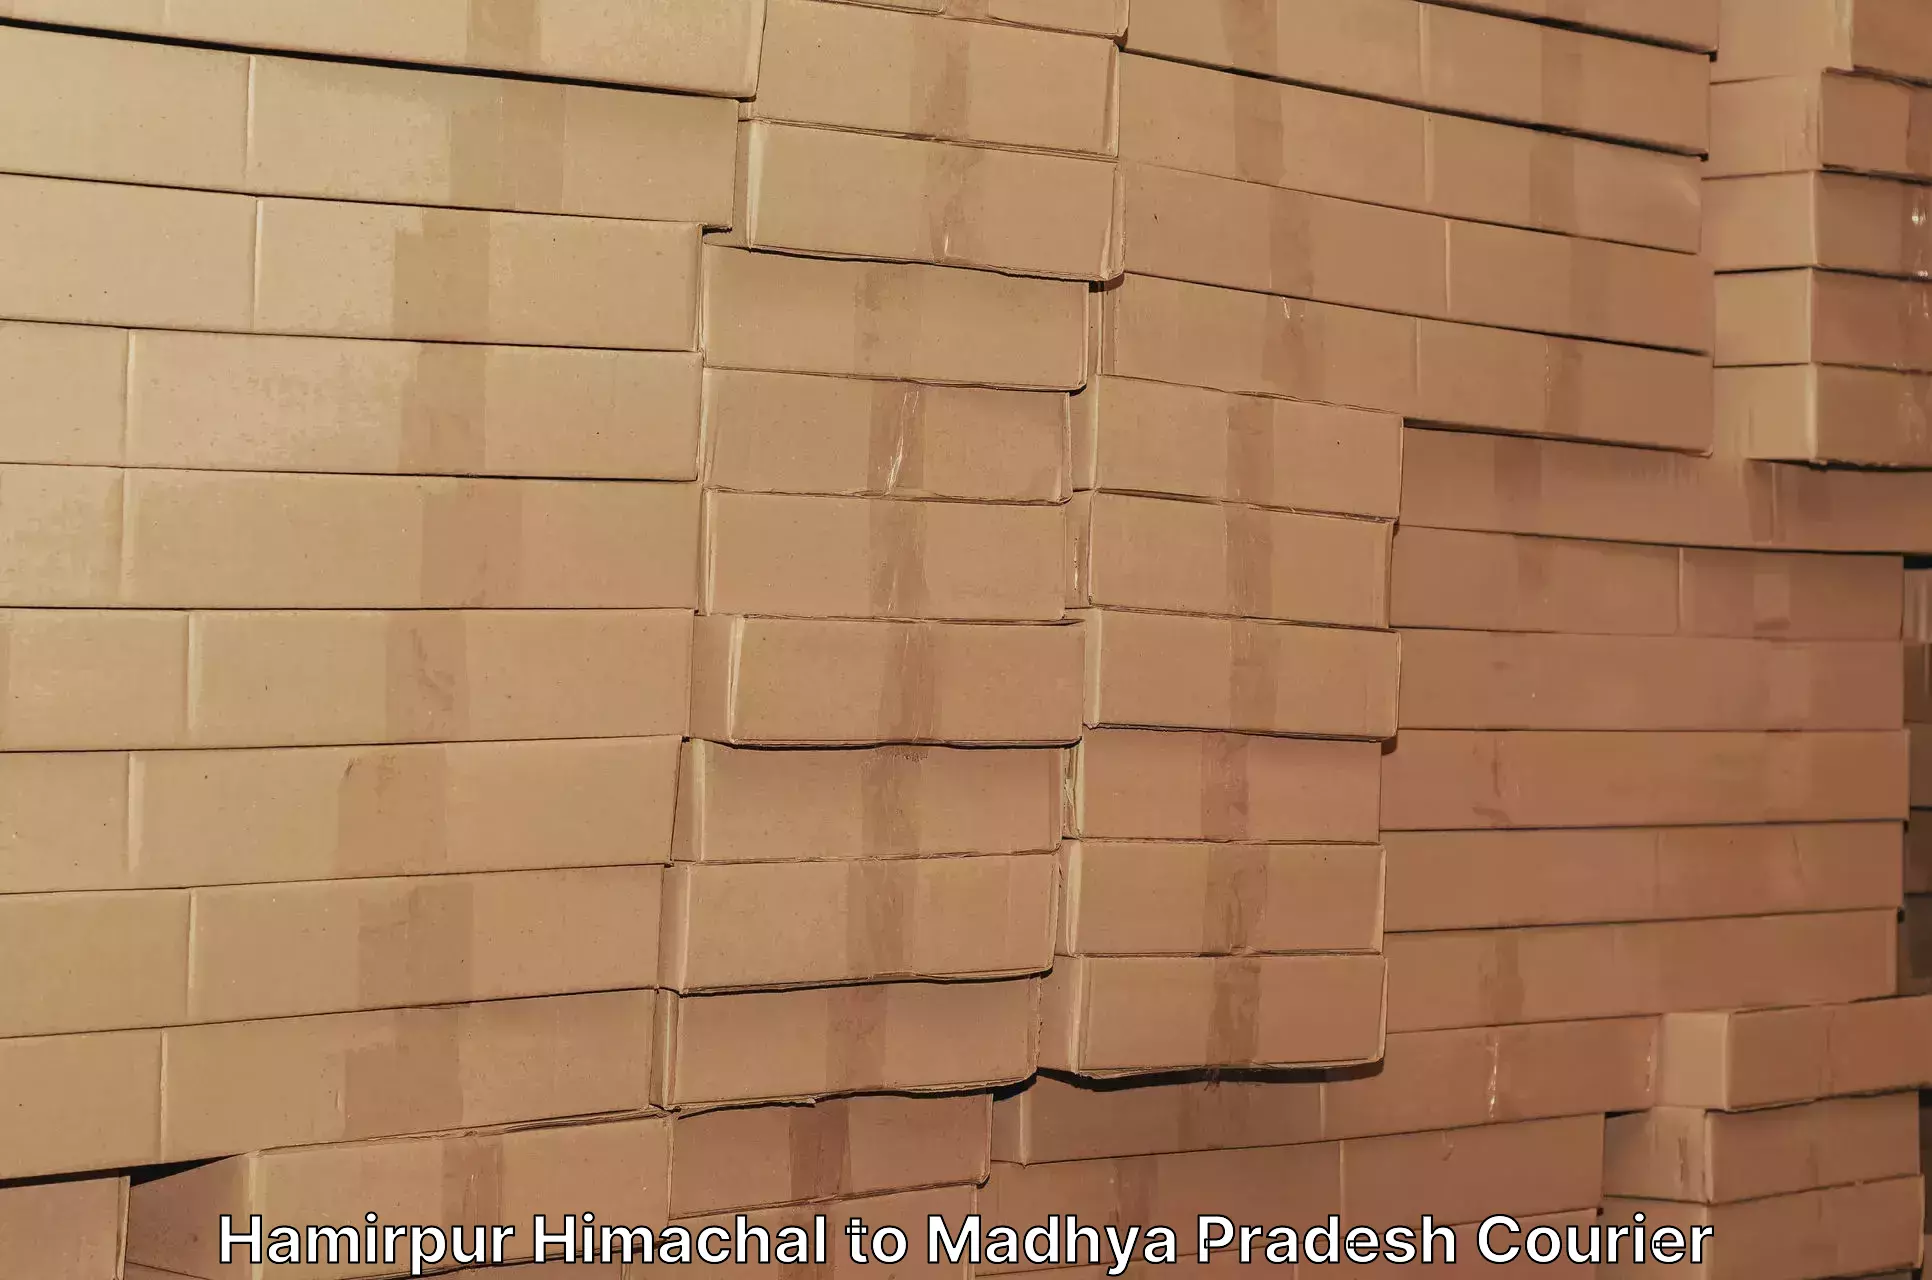 Reliable parcel services Hamirpur Himachal to Udaipura